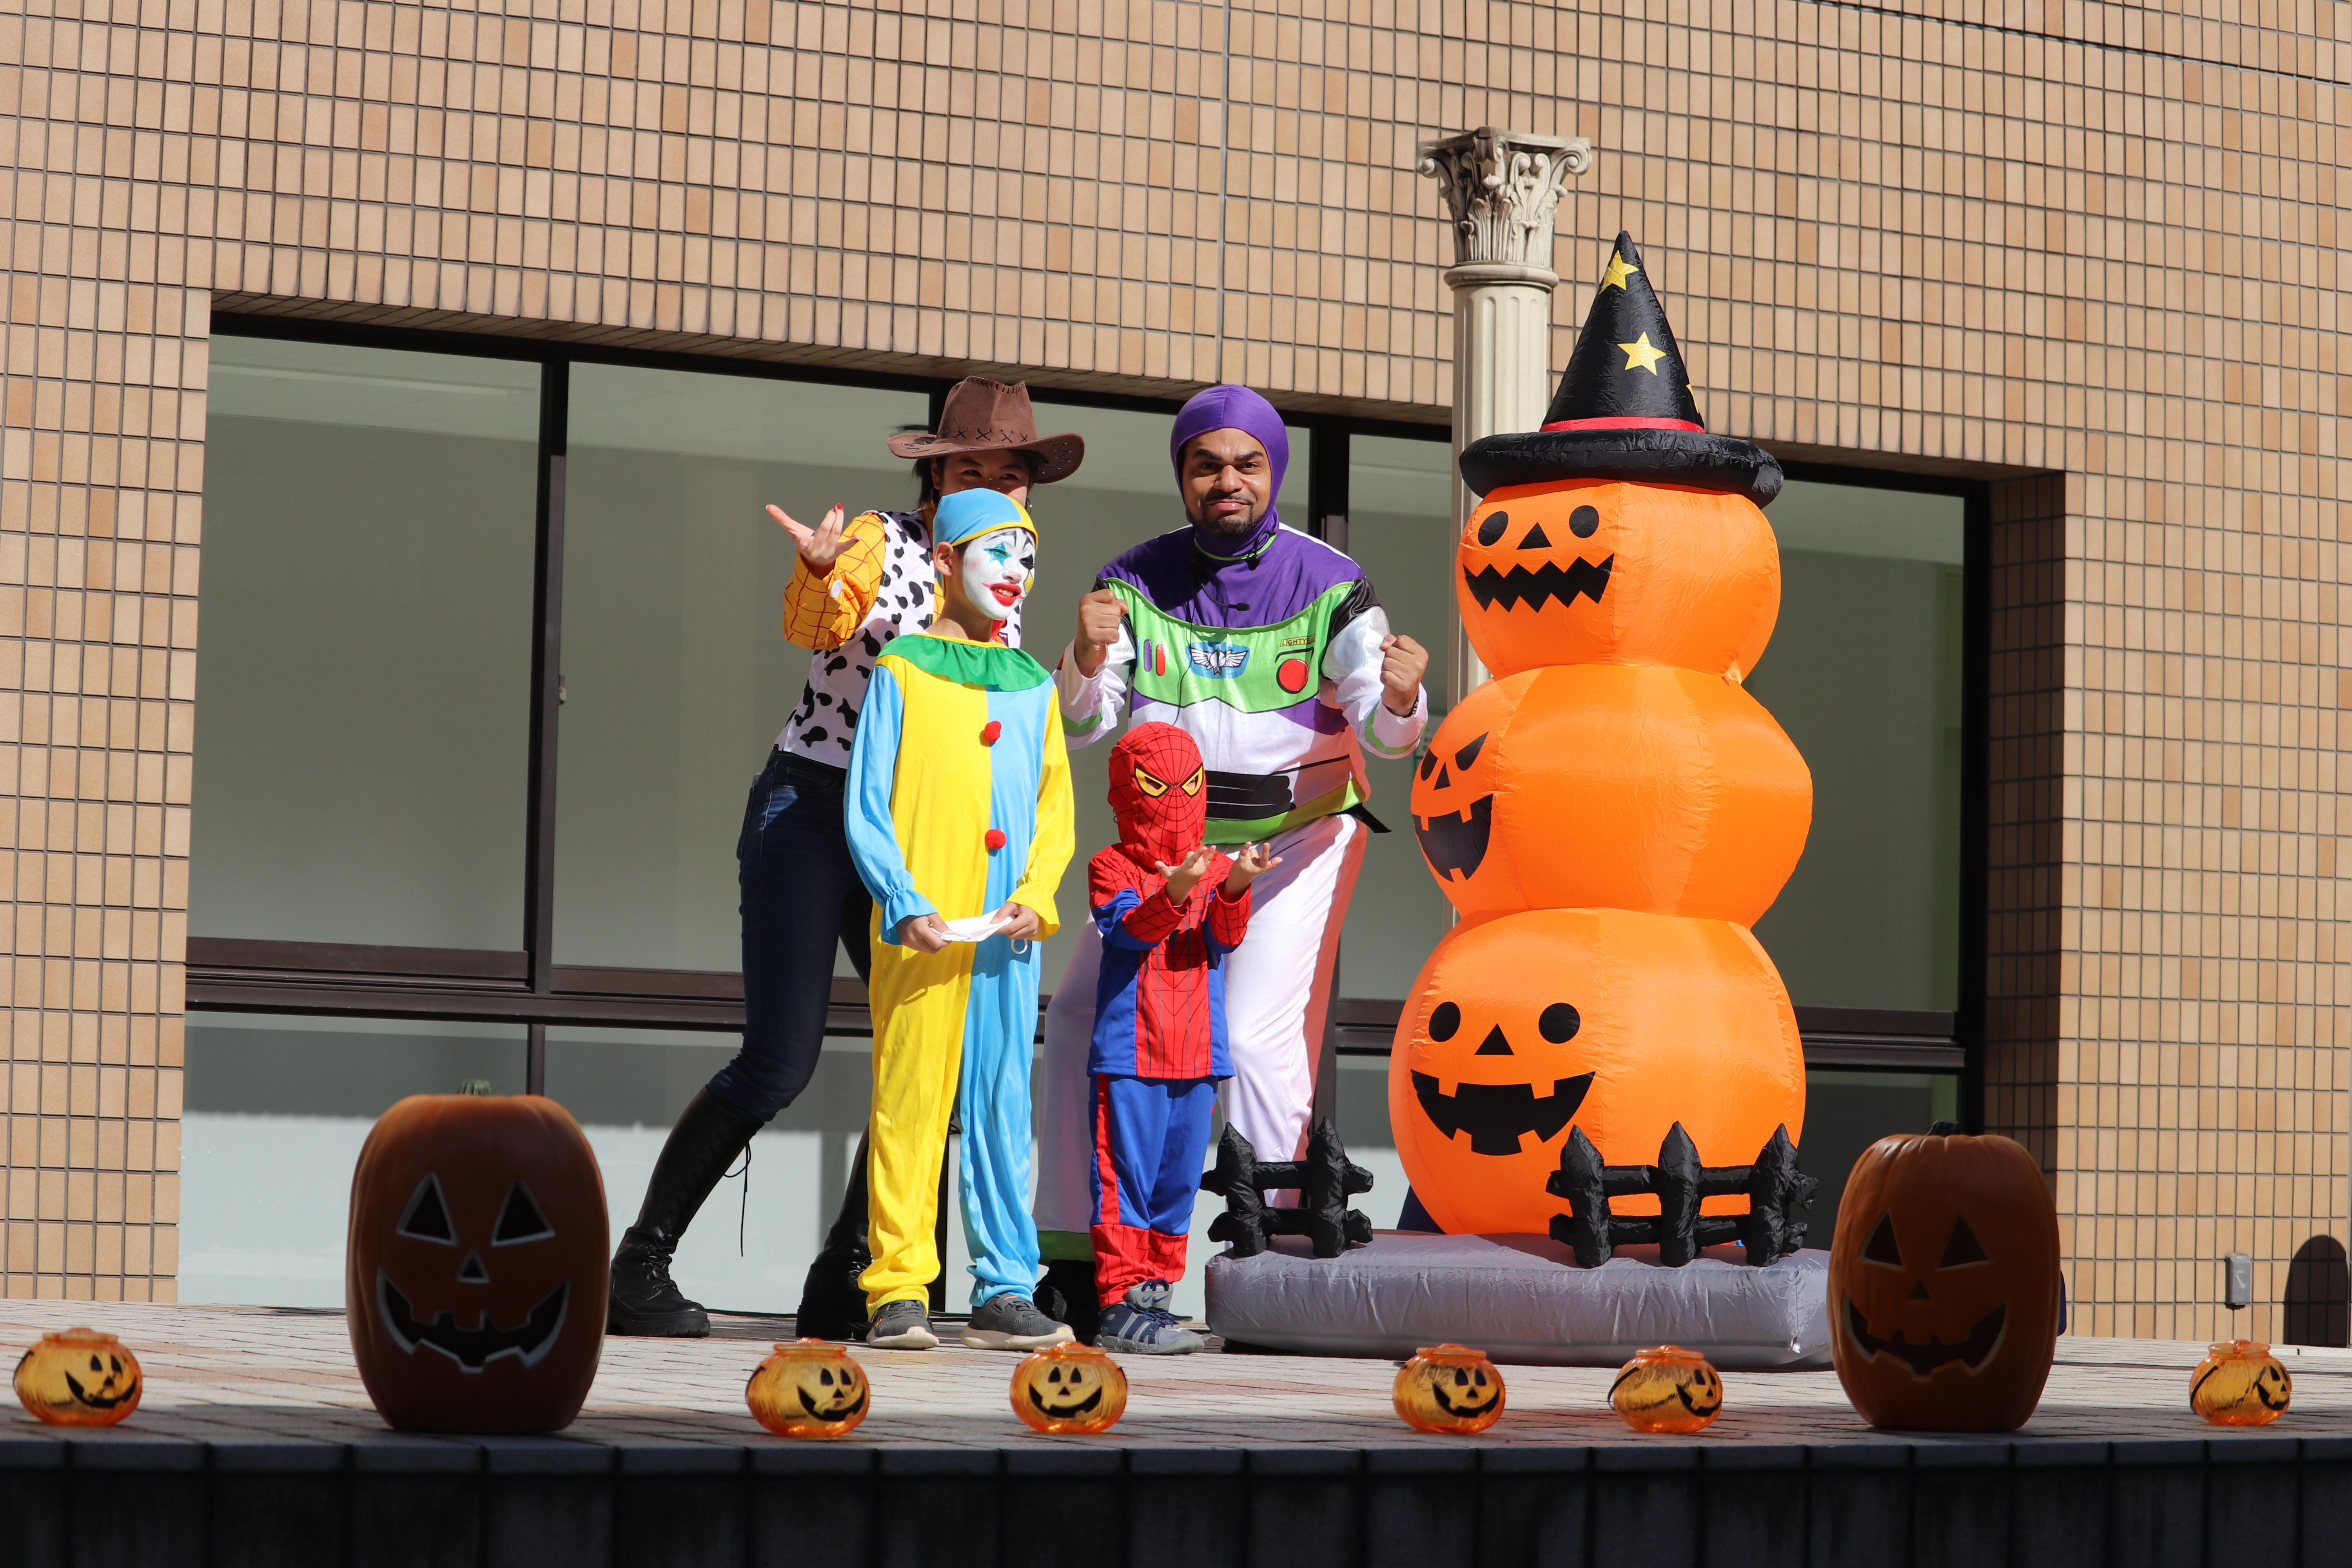 神田外語キッズクラブ 10月30日(日)に「Halloween Party」を3年ぶりにキャンパスで対面開催～さまざまなイベントが実施され、1,000名以上が参加し大盛況となりました～